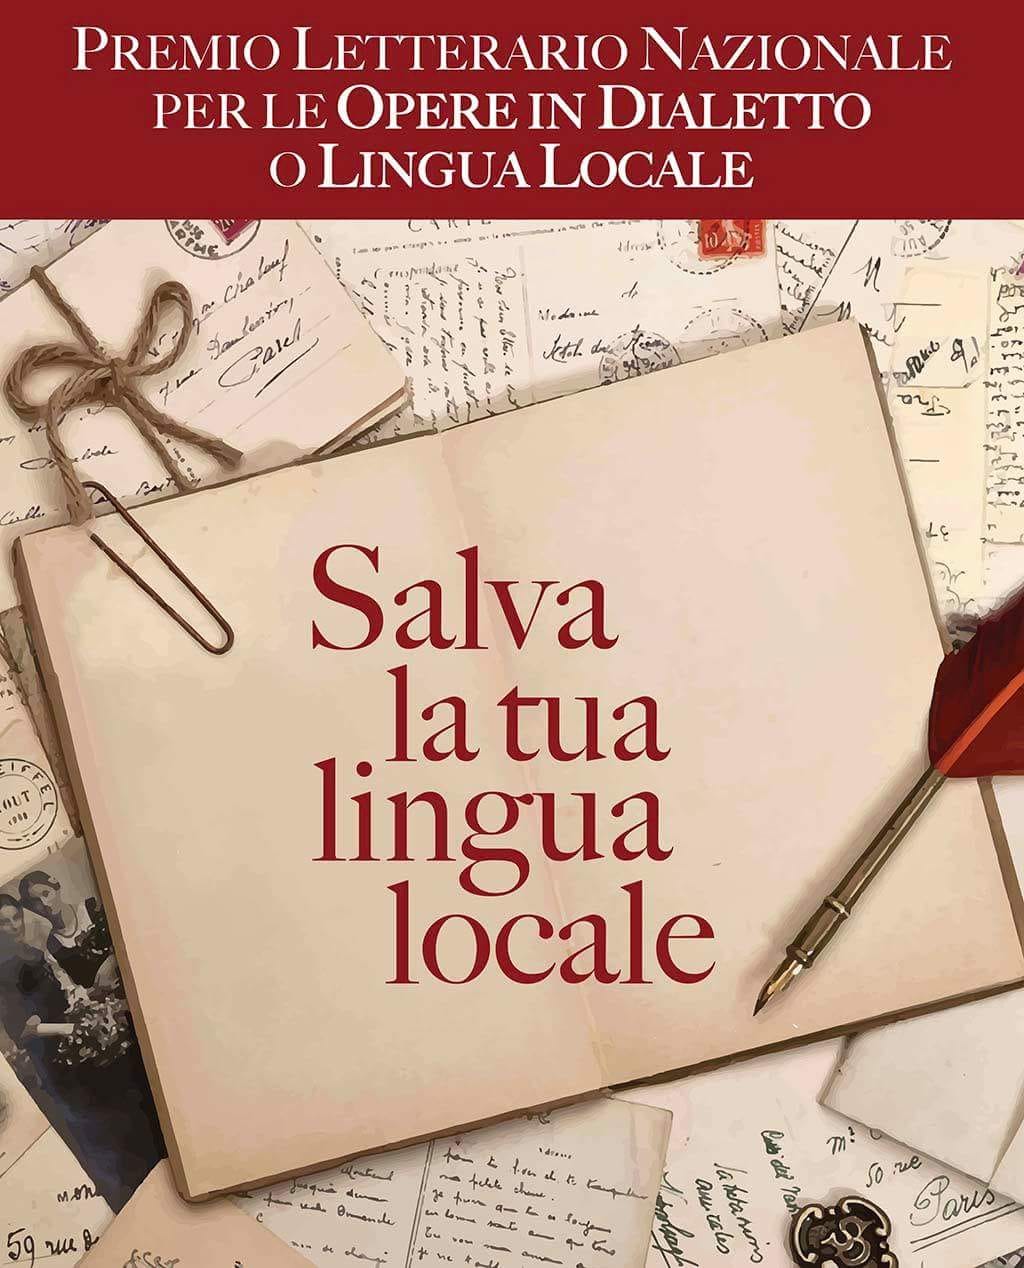 Al momento stai visualizzando E’ on line il bando 2018 del Premio Letterario Nazionale: “Salva la tua lingua locale” per le opere in Dialetto